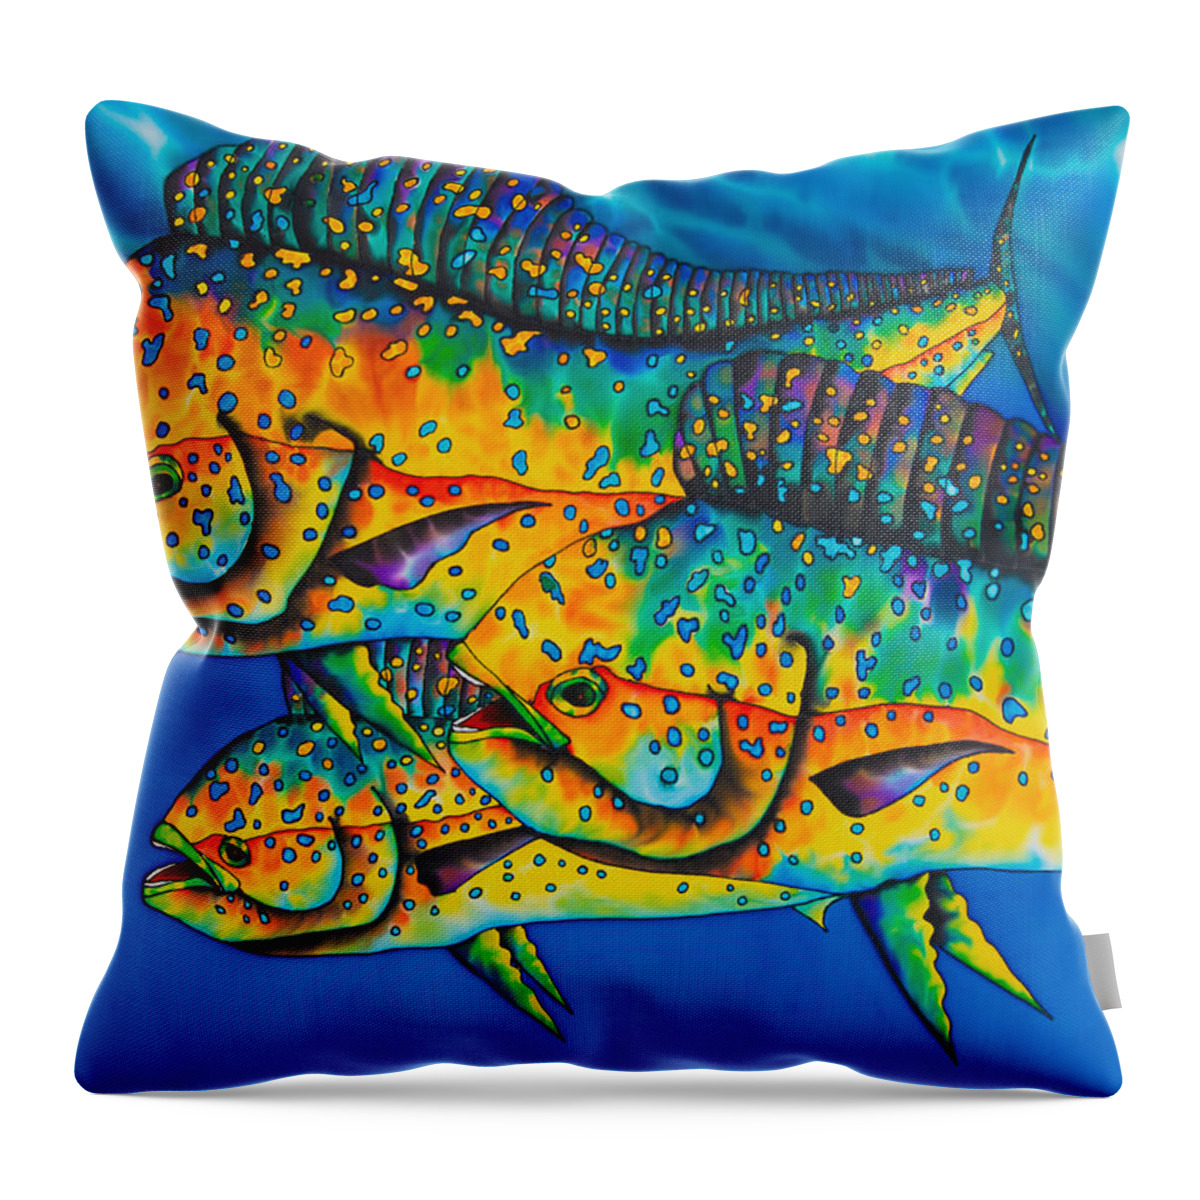 Mahi Mahi Throw Pillow featuring the painting Caribbean Mahi Mahi - Dorado Fish by Daniel Jean-Baptiste